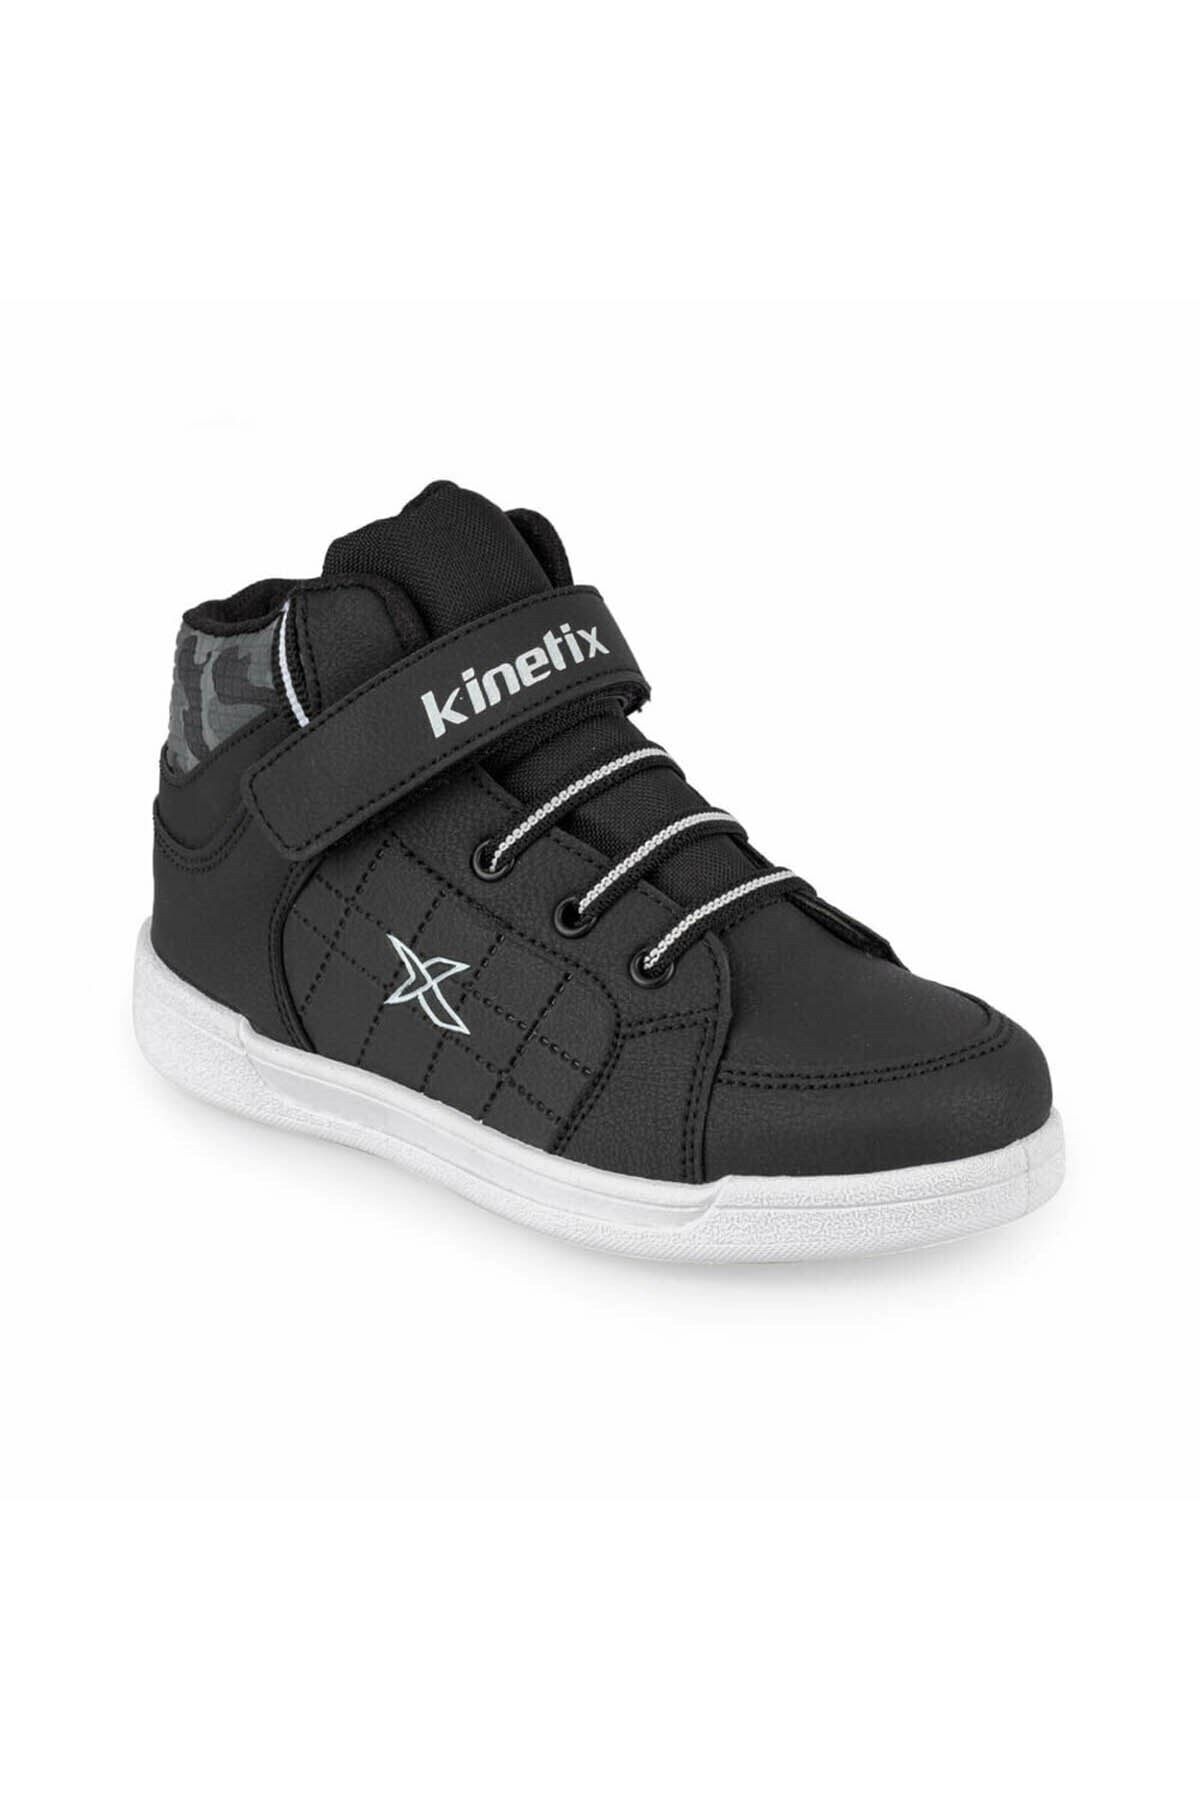 Kinetix LENKO HI C 9PR Siyah Erkek Çocuk Sneaker Ayakkabı 100425852